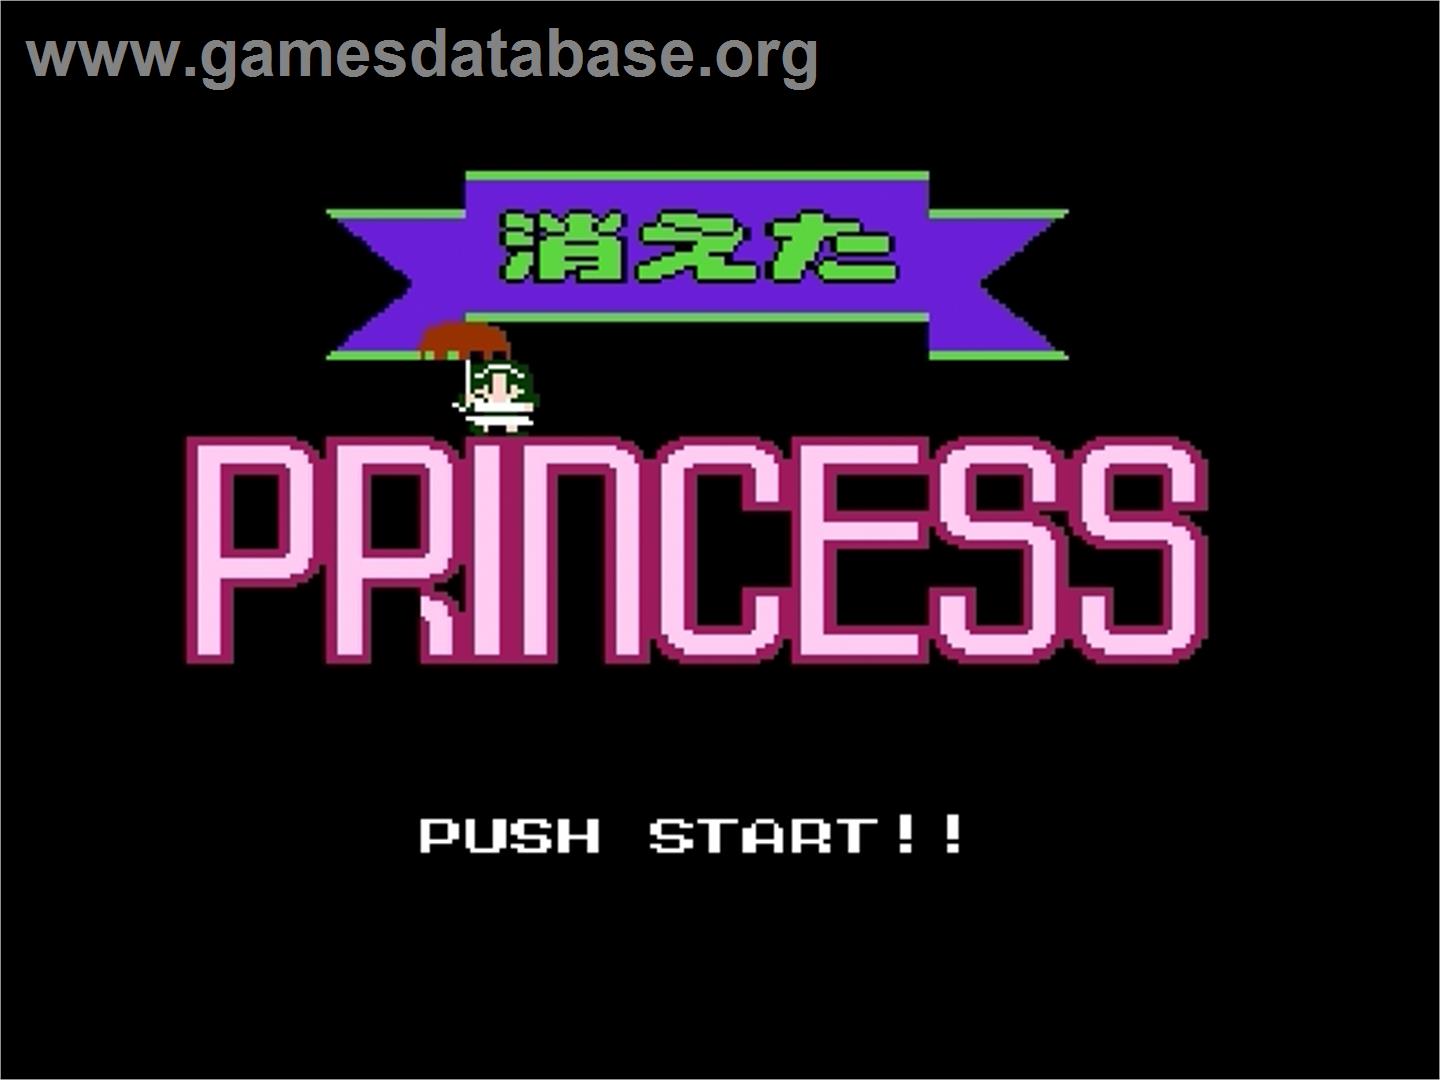 Kieta Princess - Nintendo Famicom Disk System - Artwork - Title Screen